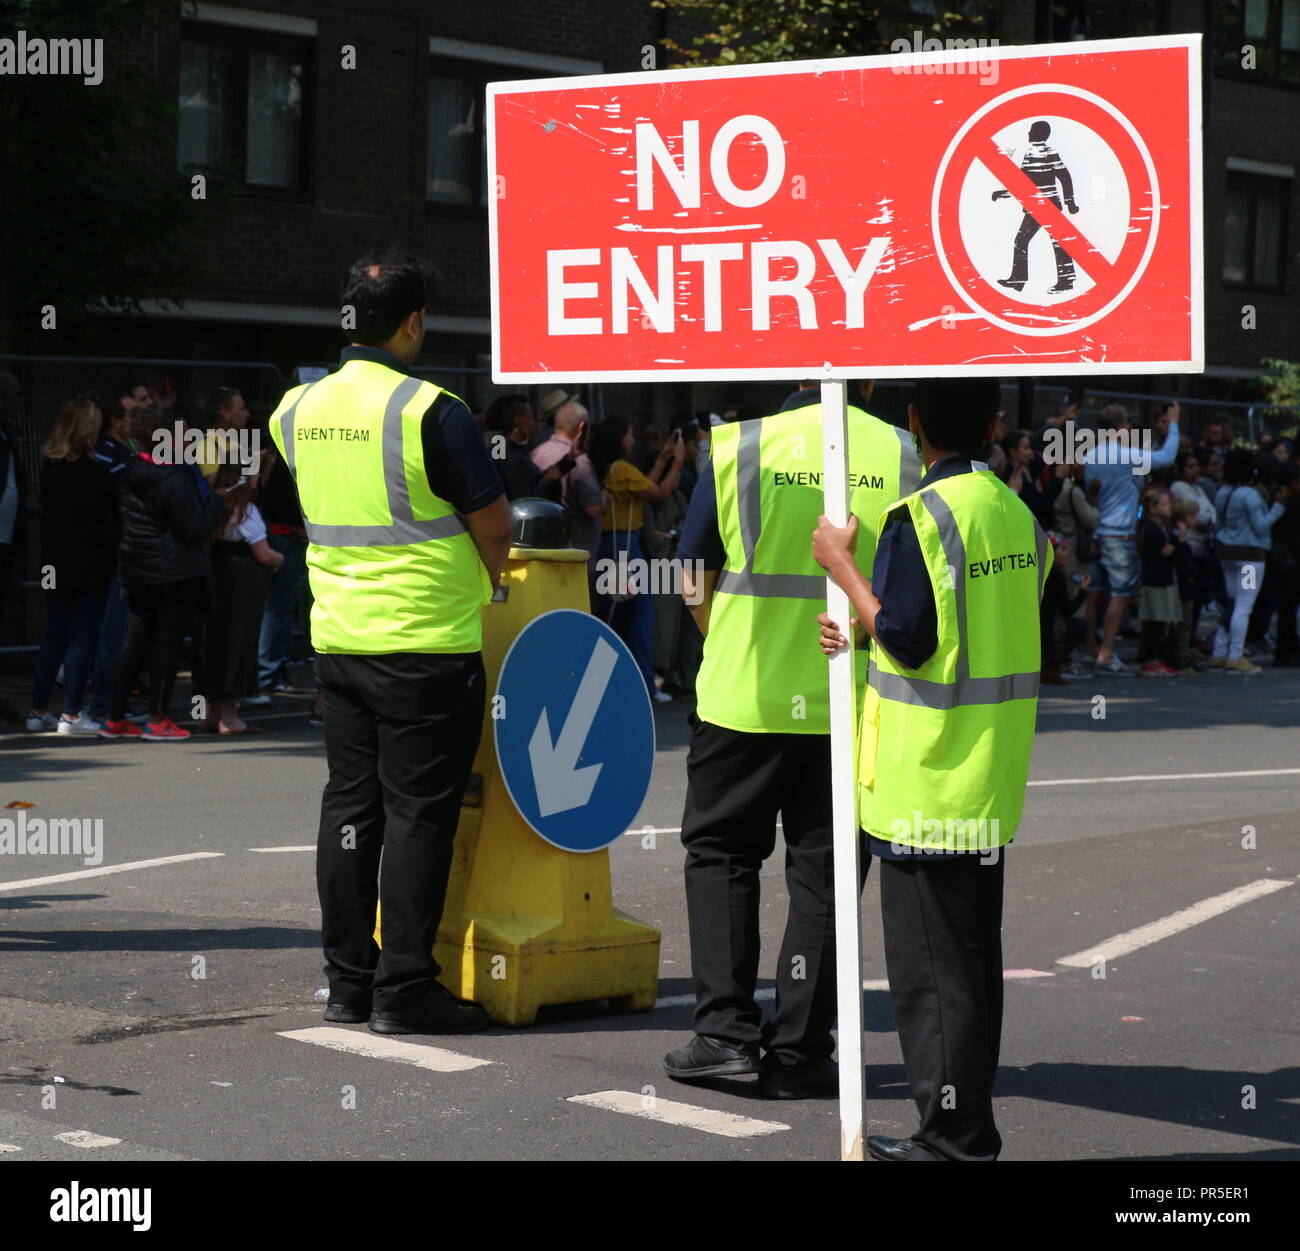 Londres, Royaume-Uni - 27 août 2018 carnaval de Notting Hill : les officiers de la sécurité de l'événement vu font face les membres du public dans un carré Banque D'Images